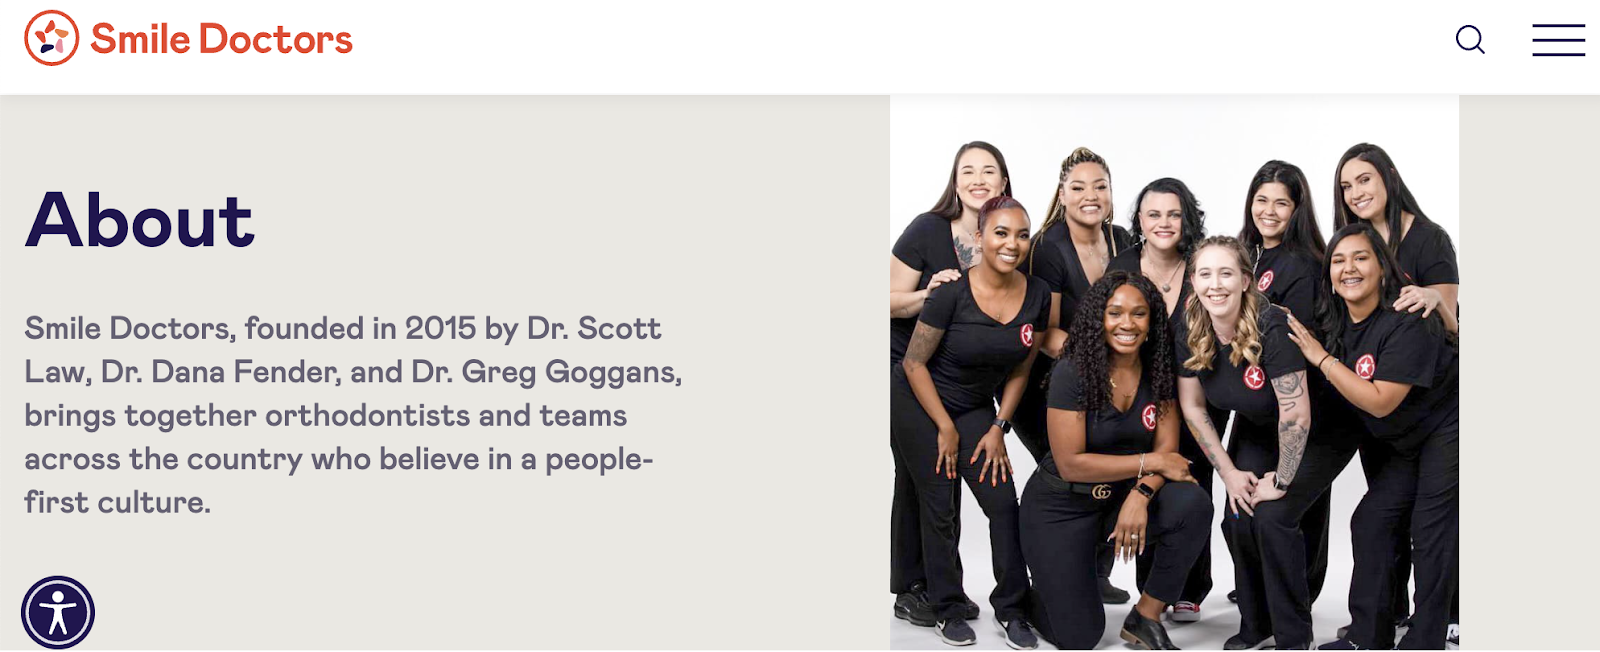 歯科マーケティング キャンペーン、Smile Doctors ホームページ